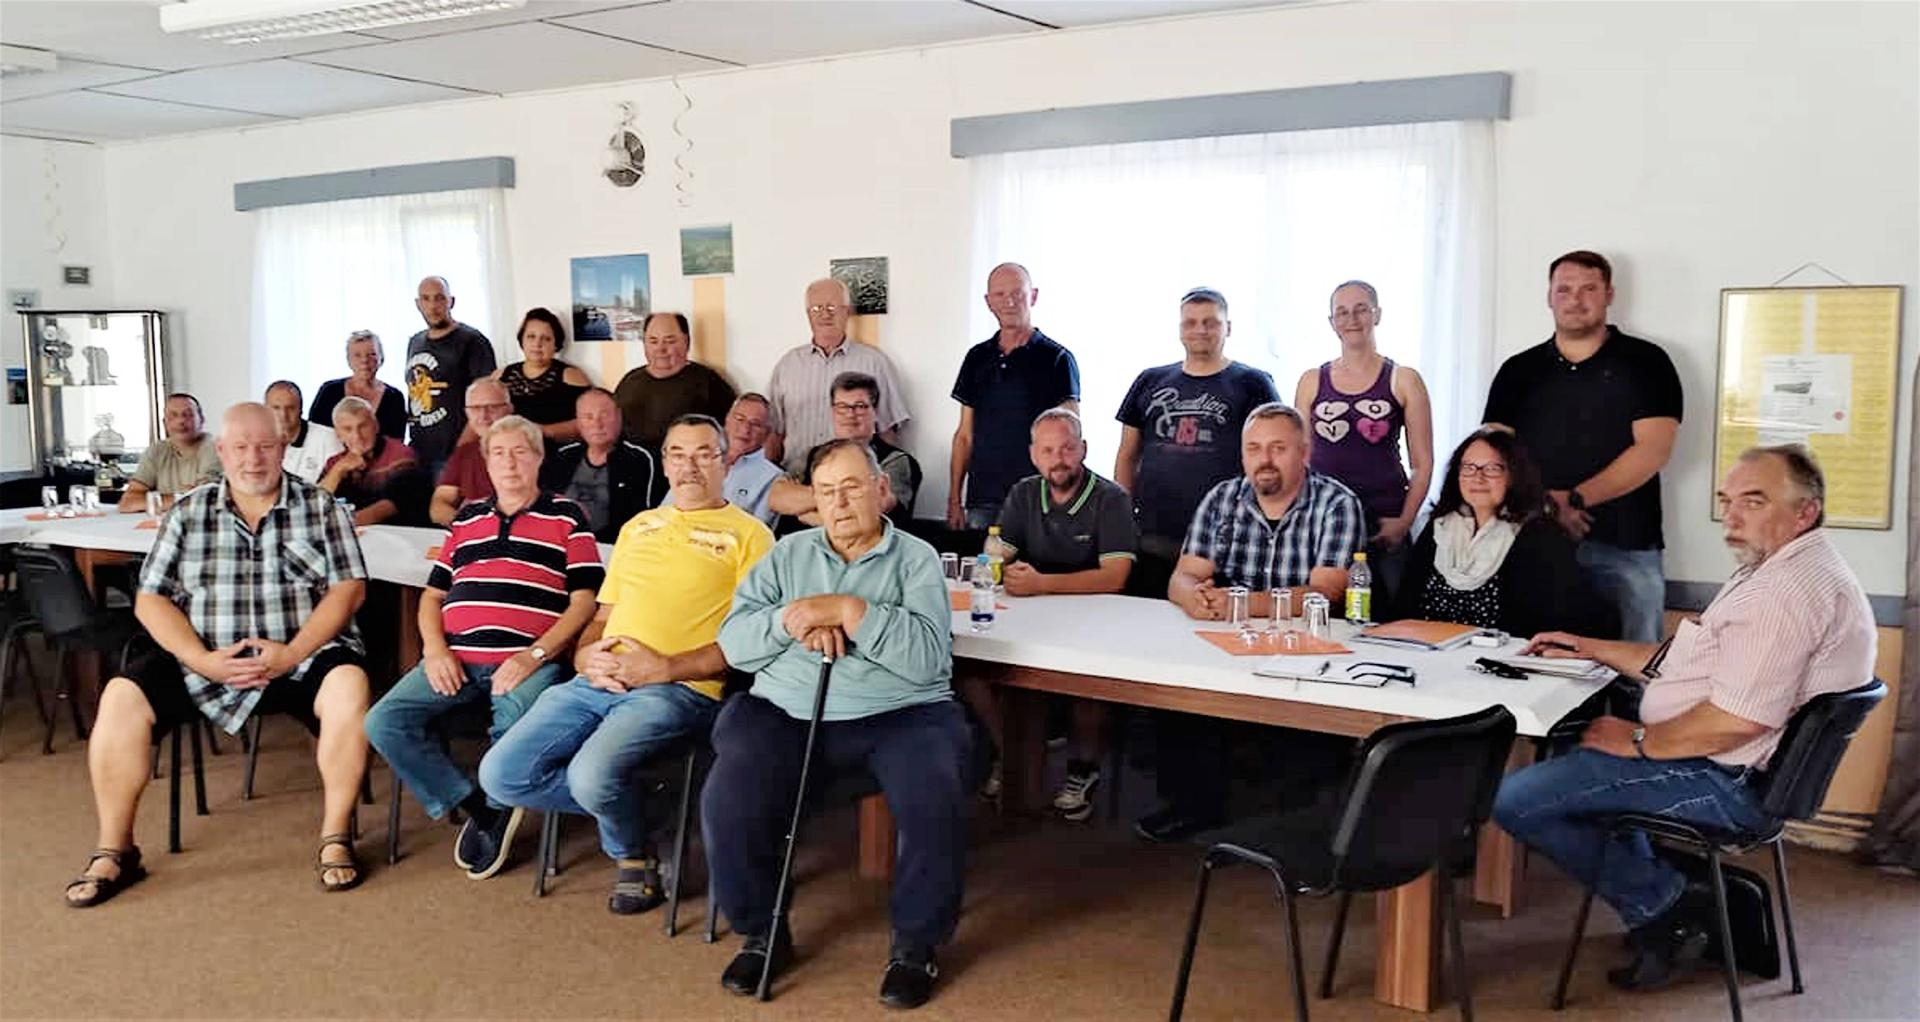 Mitgliederversammlung des Angelvereins "Hecht" am 21. August 2021